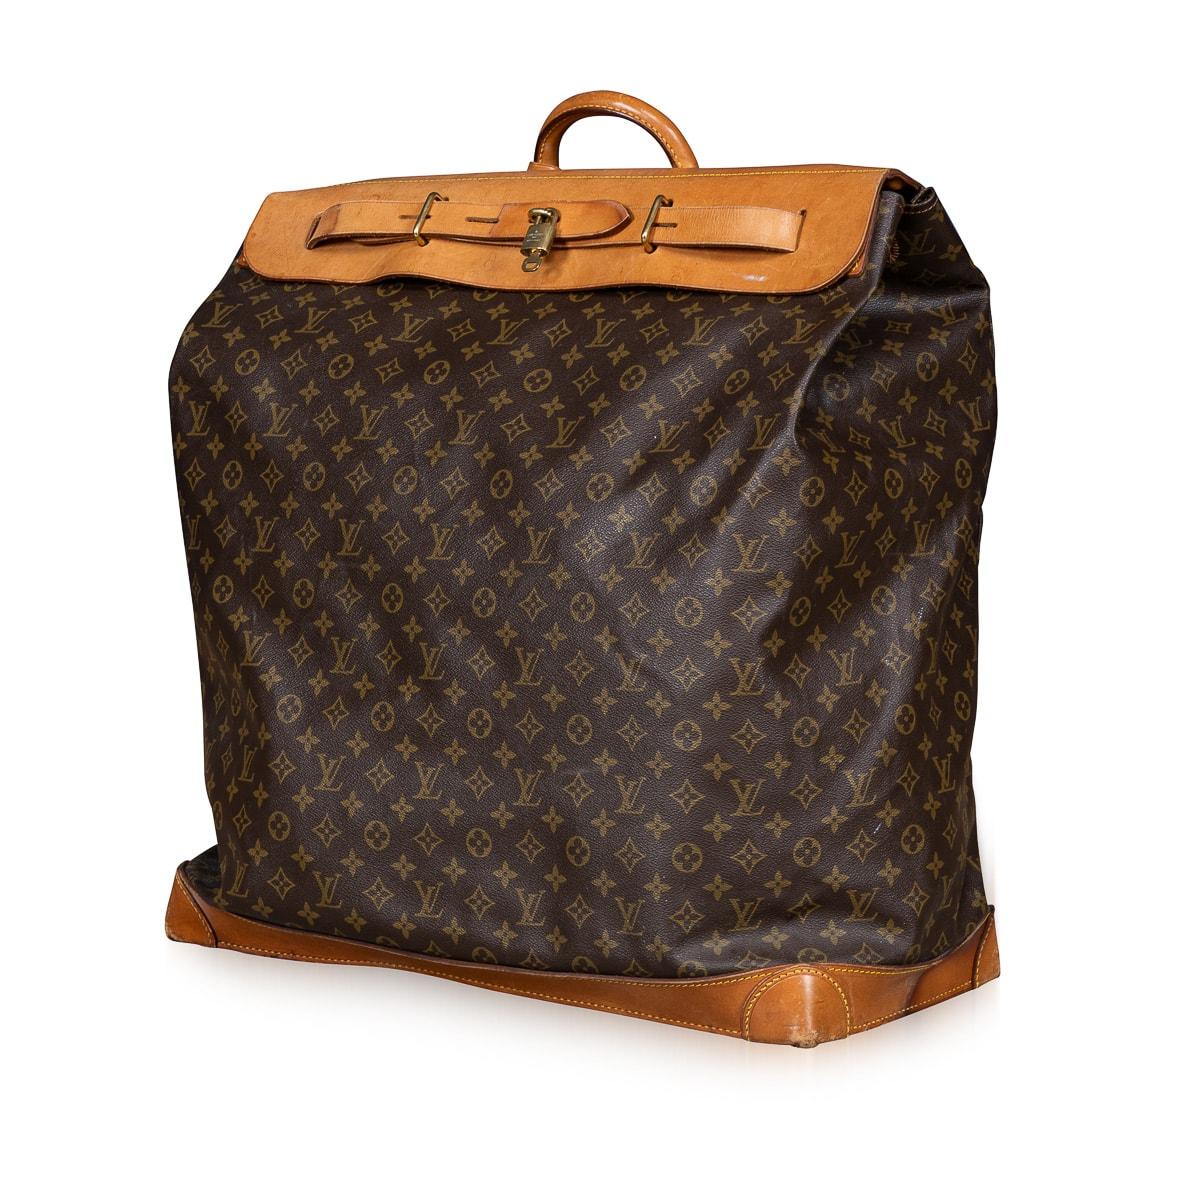 Eine Louis Vuitton Reisetasche aus dem 20. Jahrhundert, gefertigt aus Monogram Canvas und naturfarbenem Leder, ist der Inbegriff des unermüdlichen Engagements der Marke für ein Design, das Stil und Nutzen nahtlos in Einklang bringt. Inspiriert von